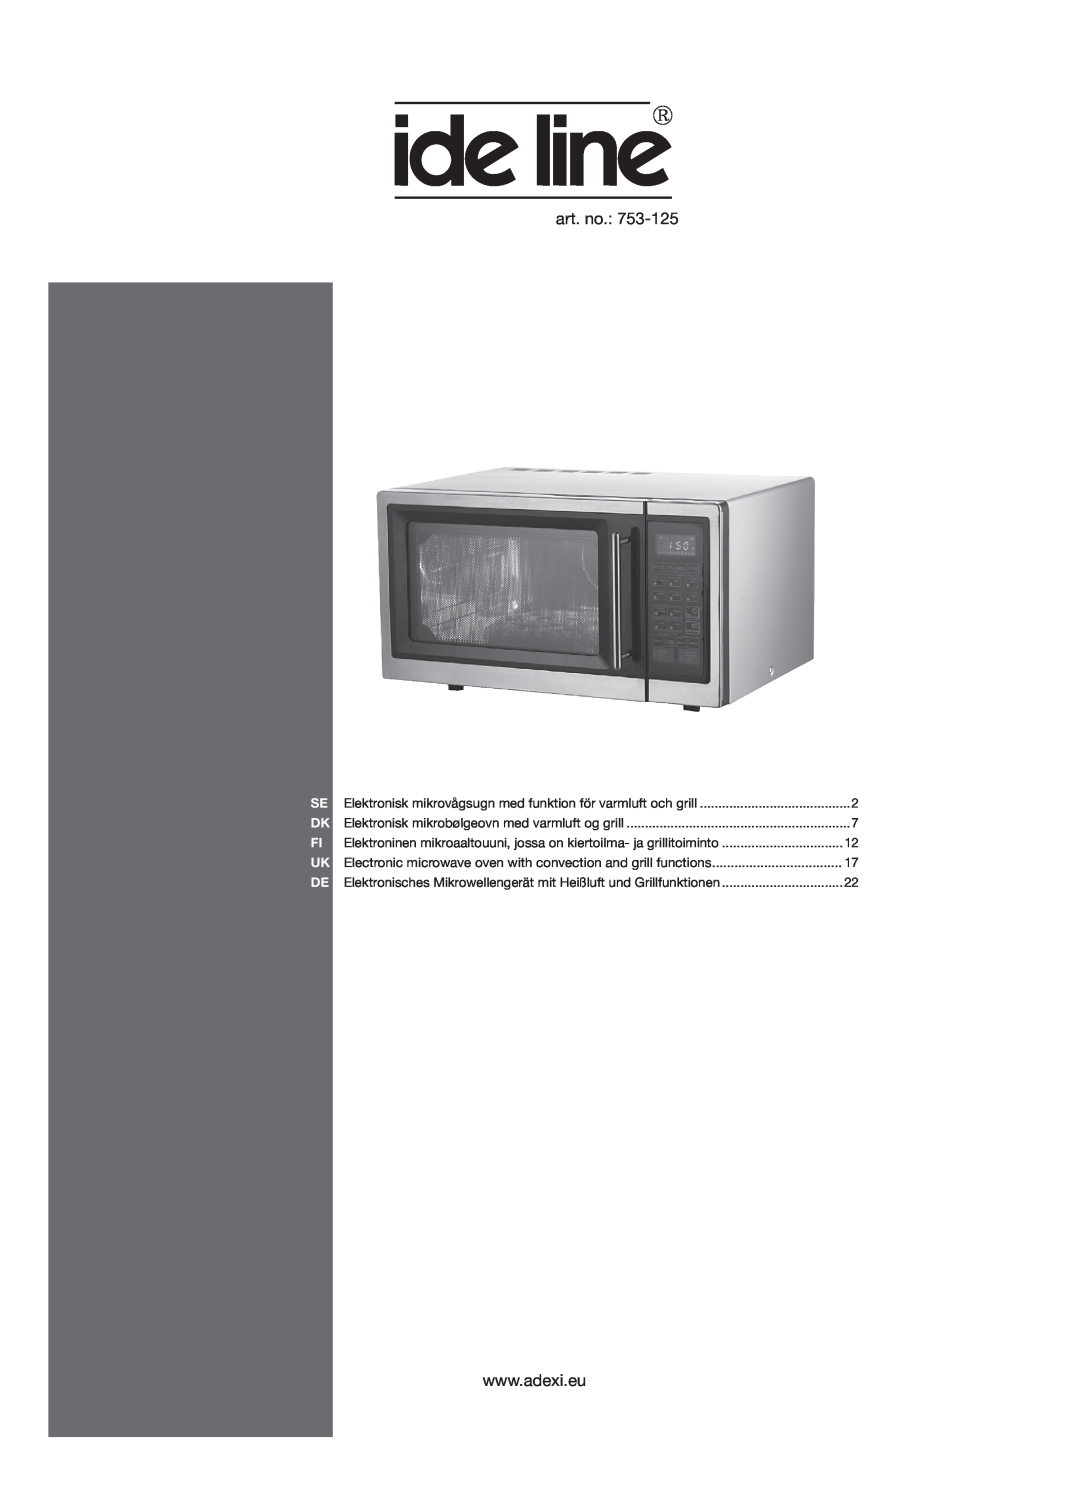 Melissa 753-125 manual art. no, Elektronisk mikrovågsugn med funktion för varmluft och grill 